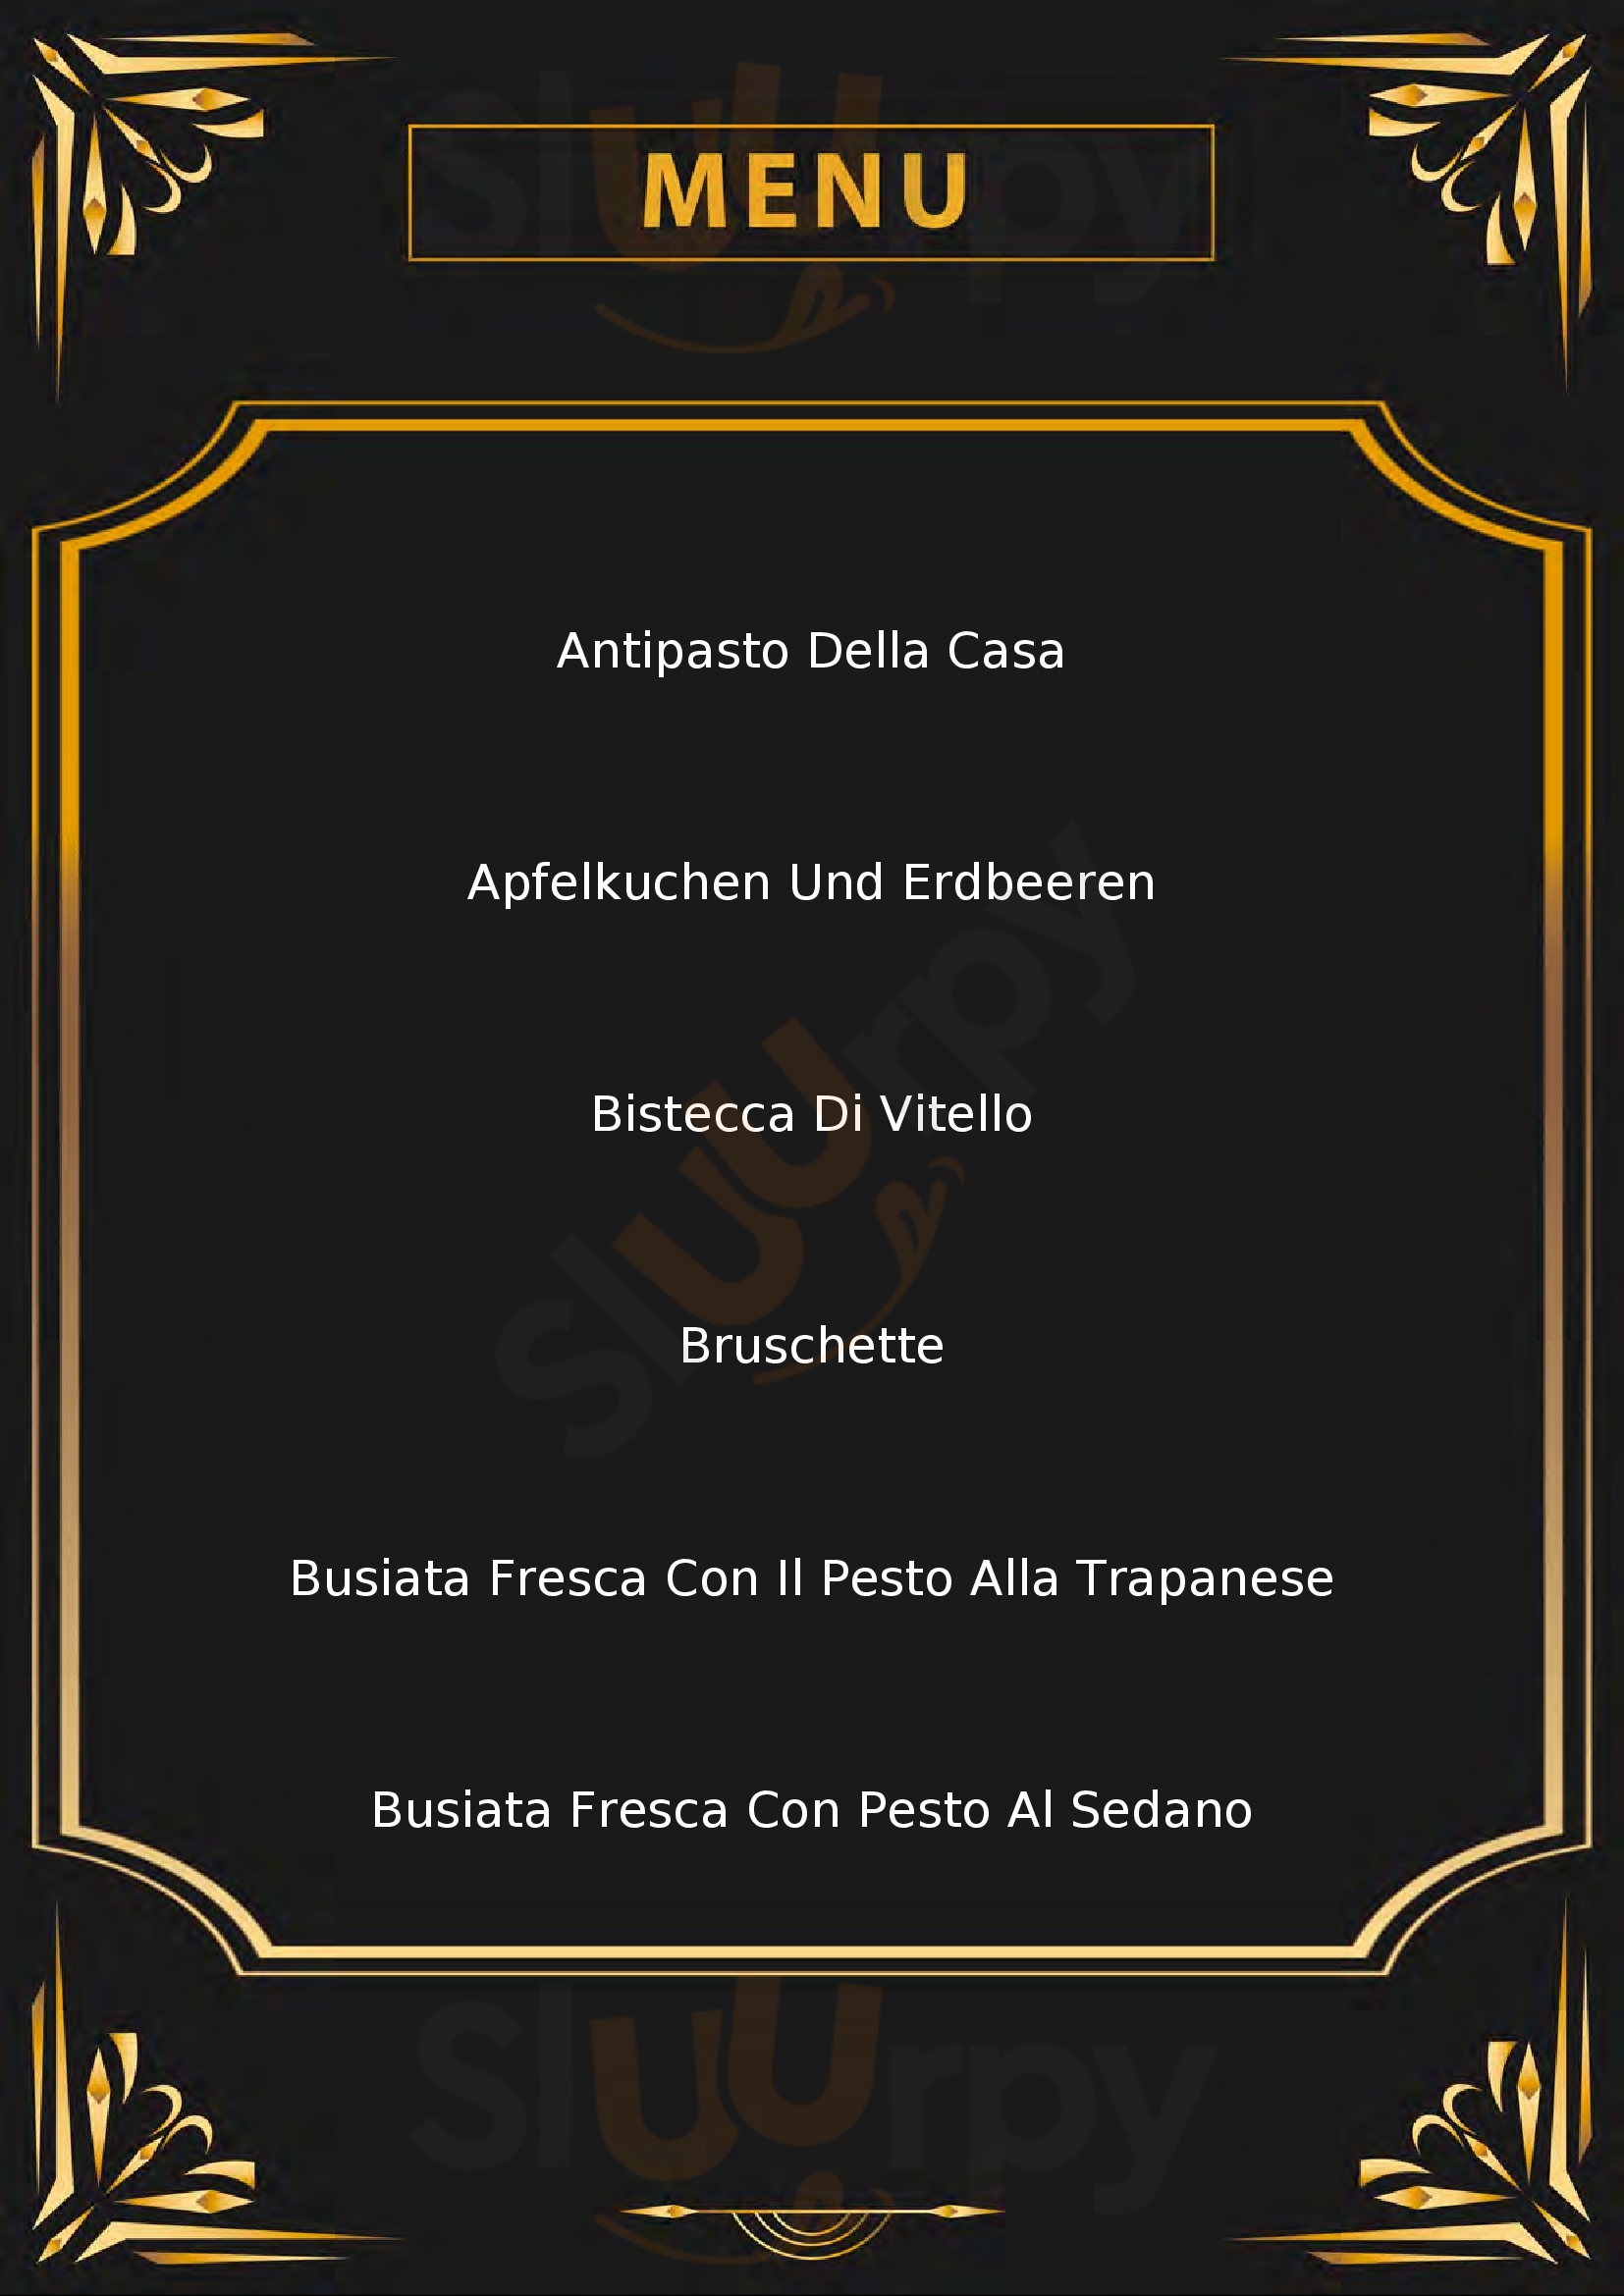 La Casetta Home Restaurant Buseto Palizzolo menù 1 pagina